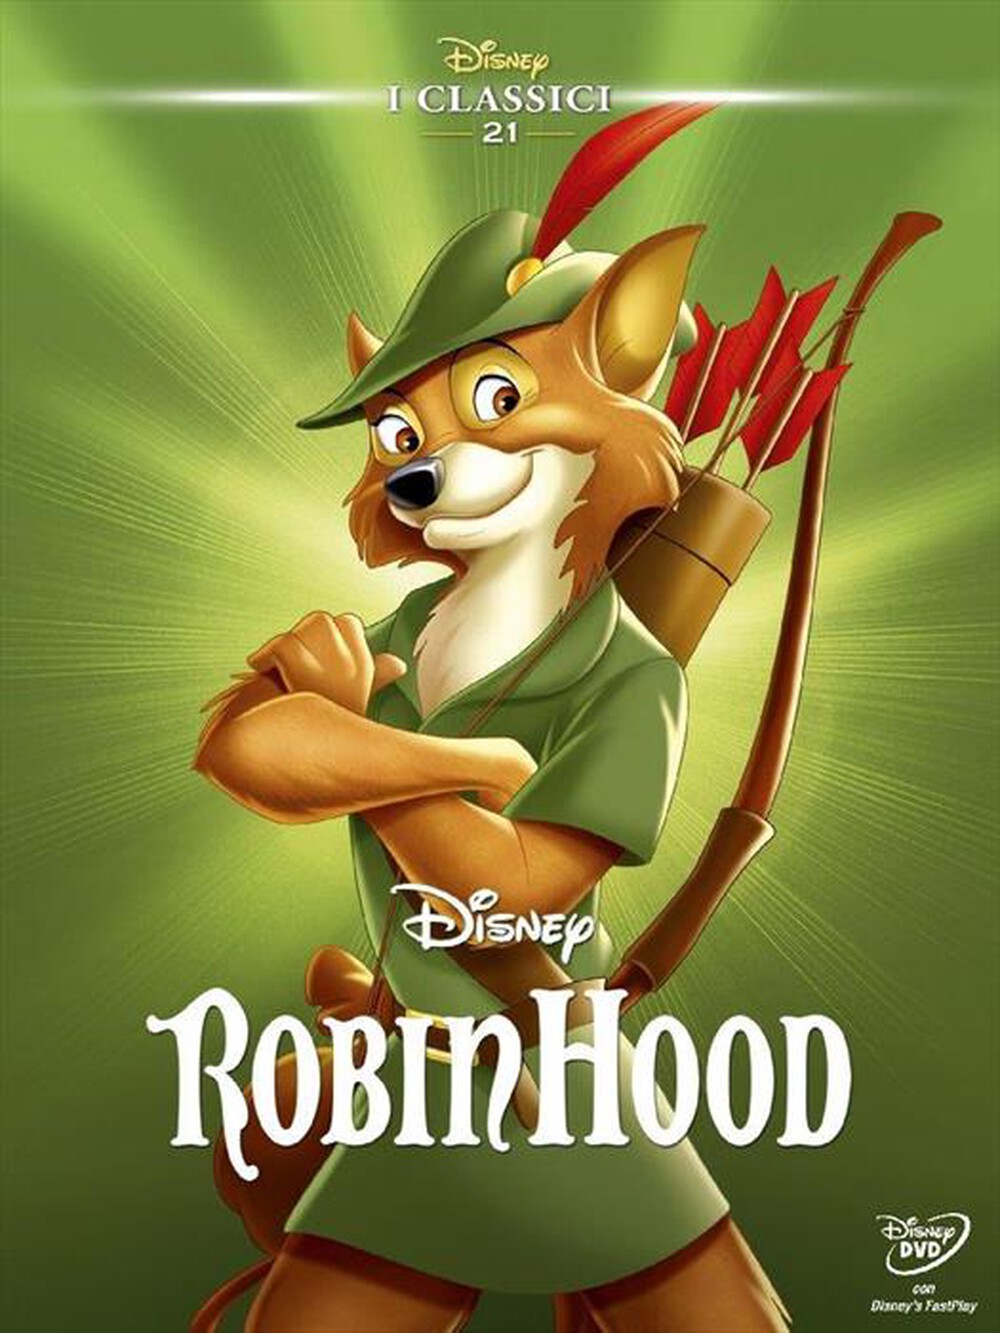 "WALT DISNEY - Robin Hood"